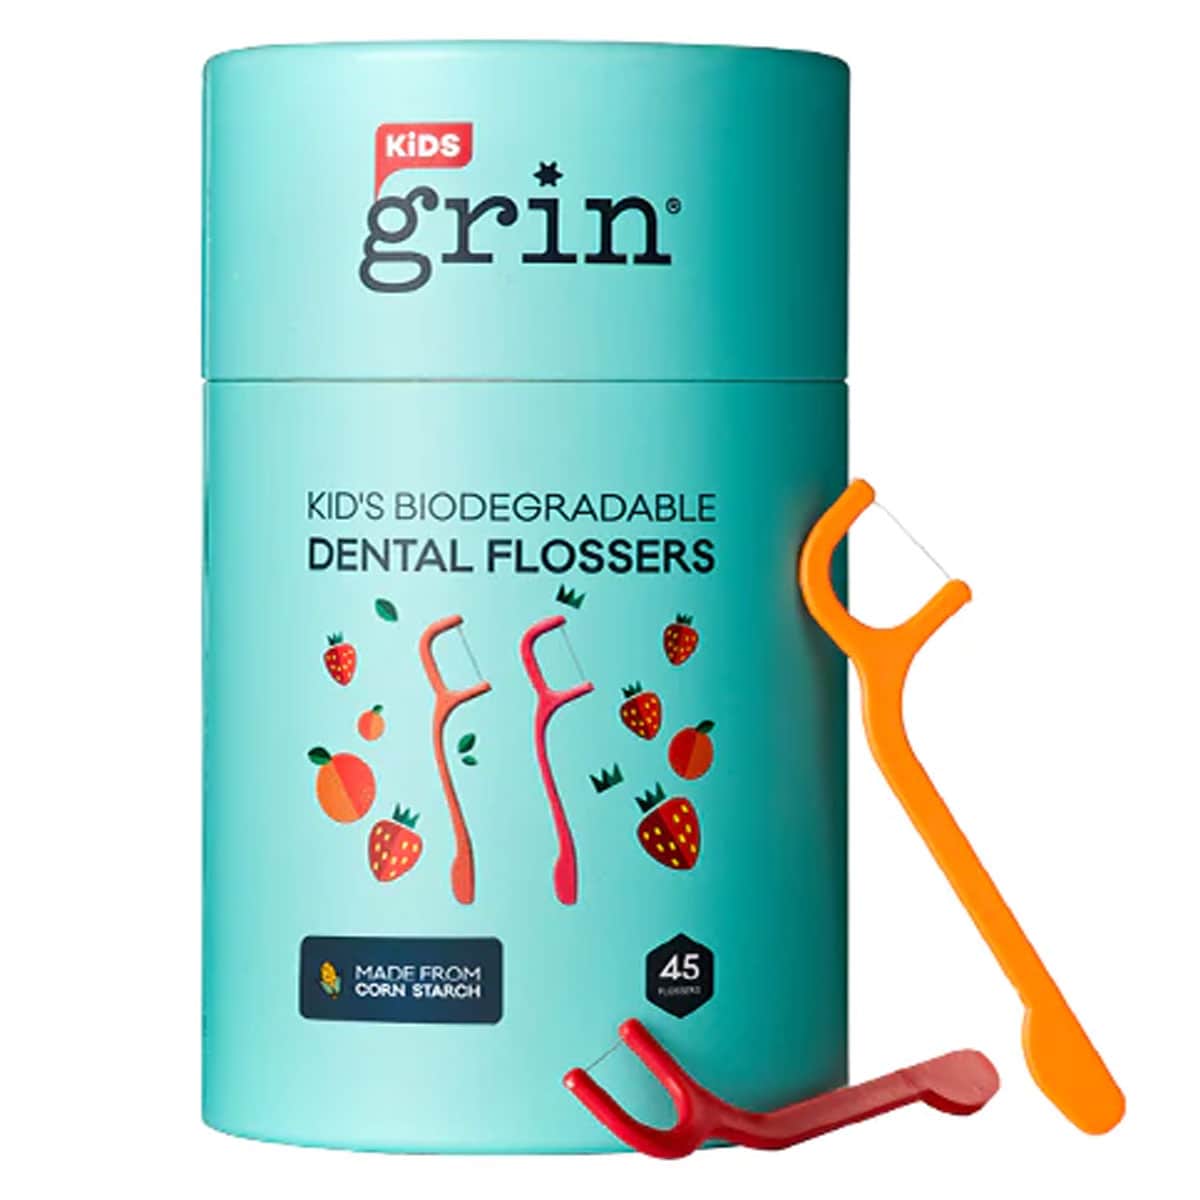 GRIN Biodegradable Kids Dental Flossers 45 Pack